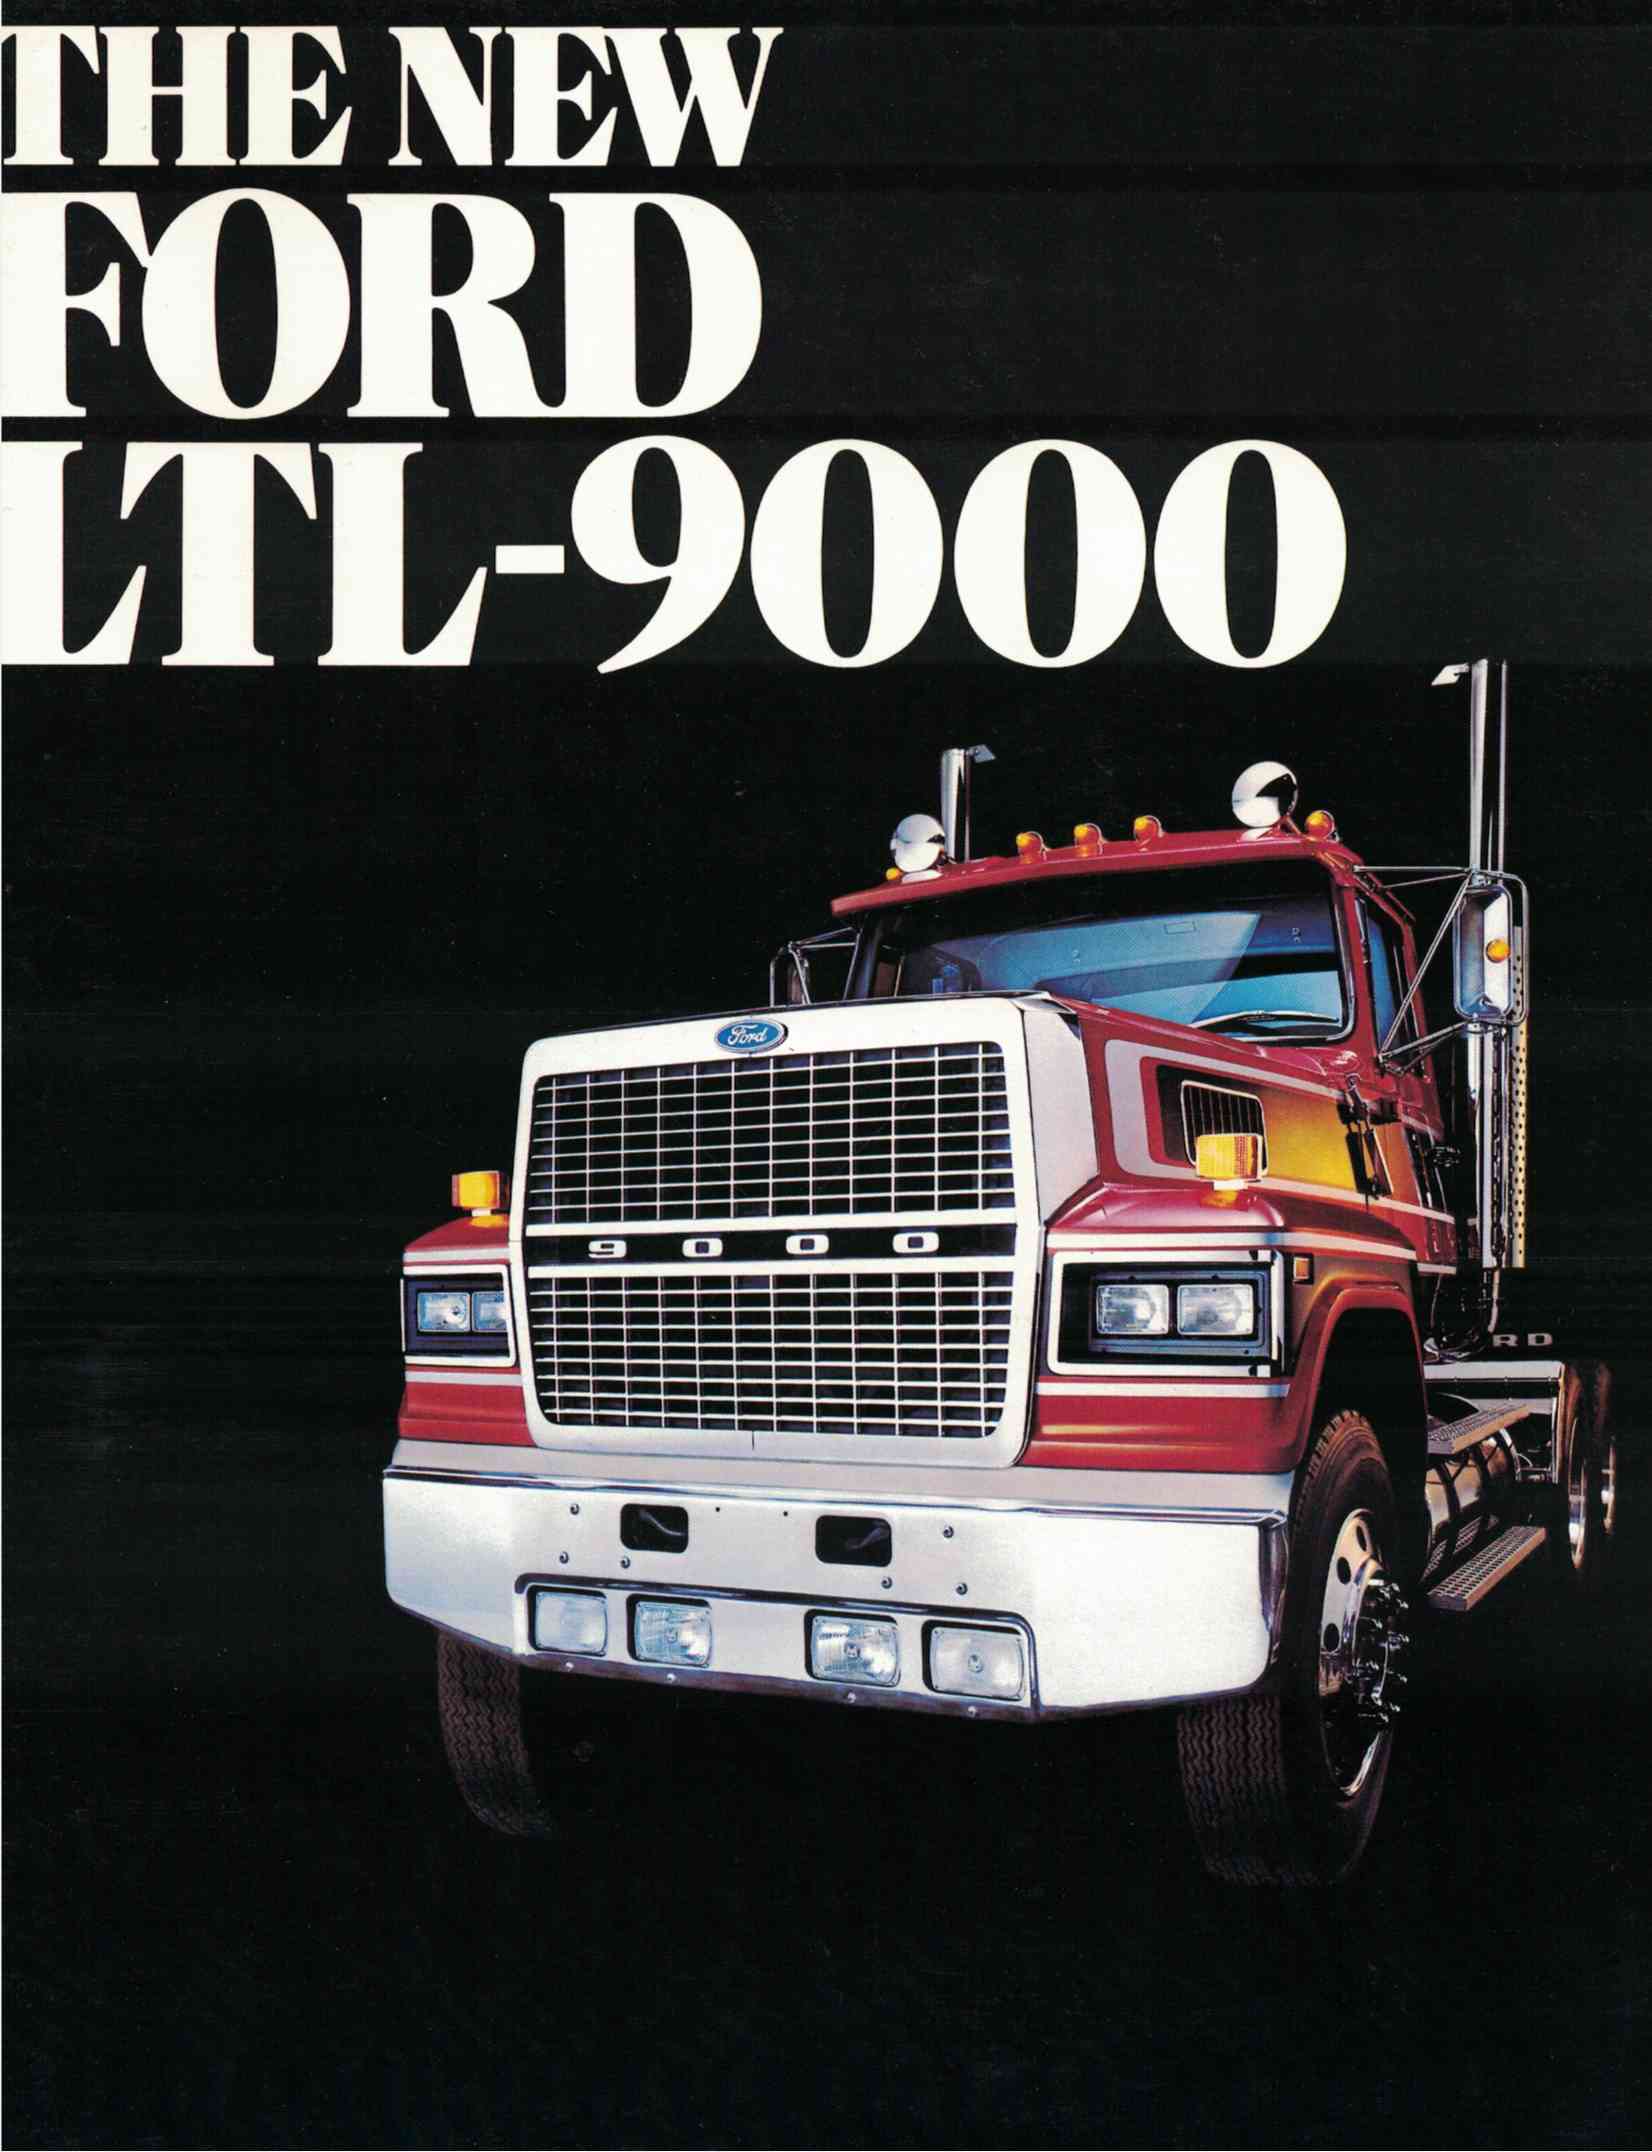 1984 Ford LTL-9000 Truck Dealer Sales Brochure 